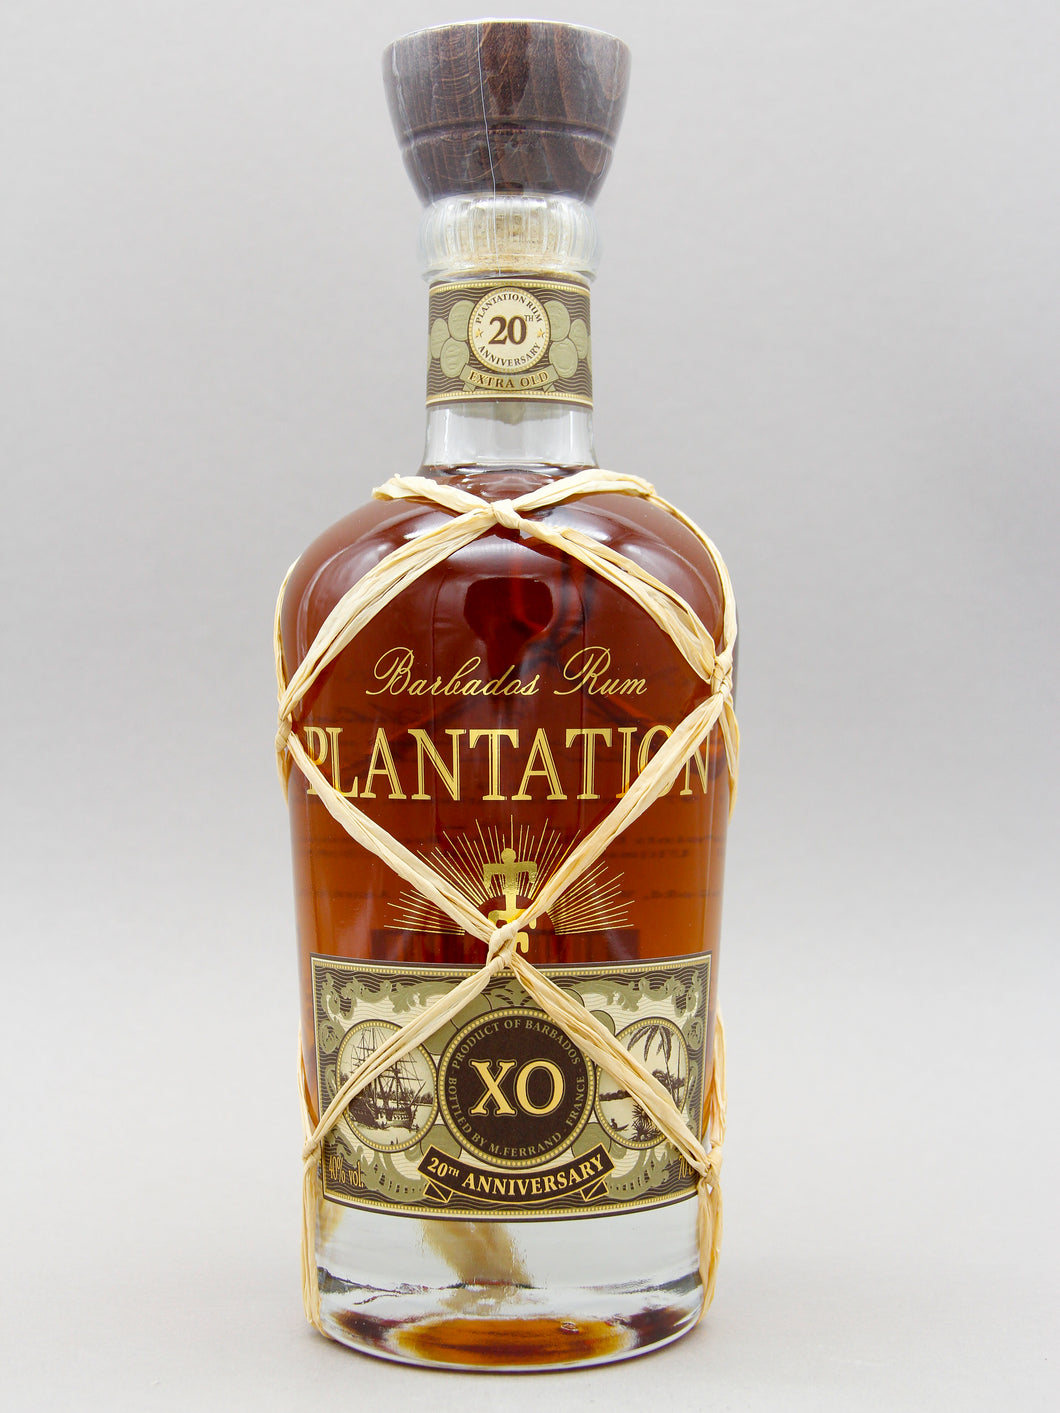 Plantation XO, Barbados, Rum, 20th Anniversary (40%, 70cl)